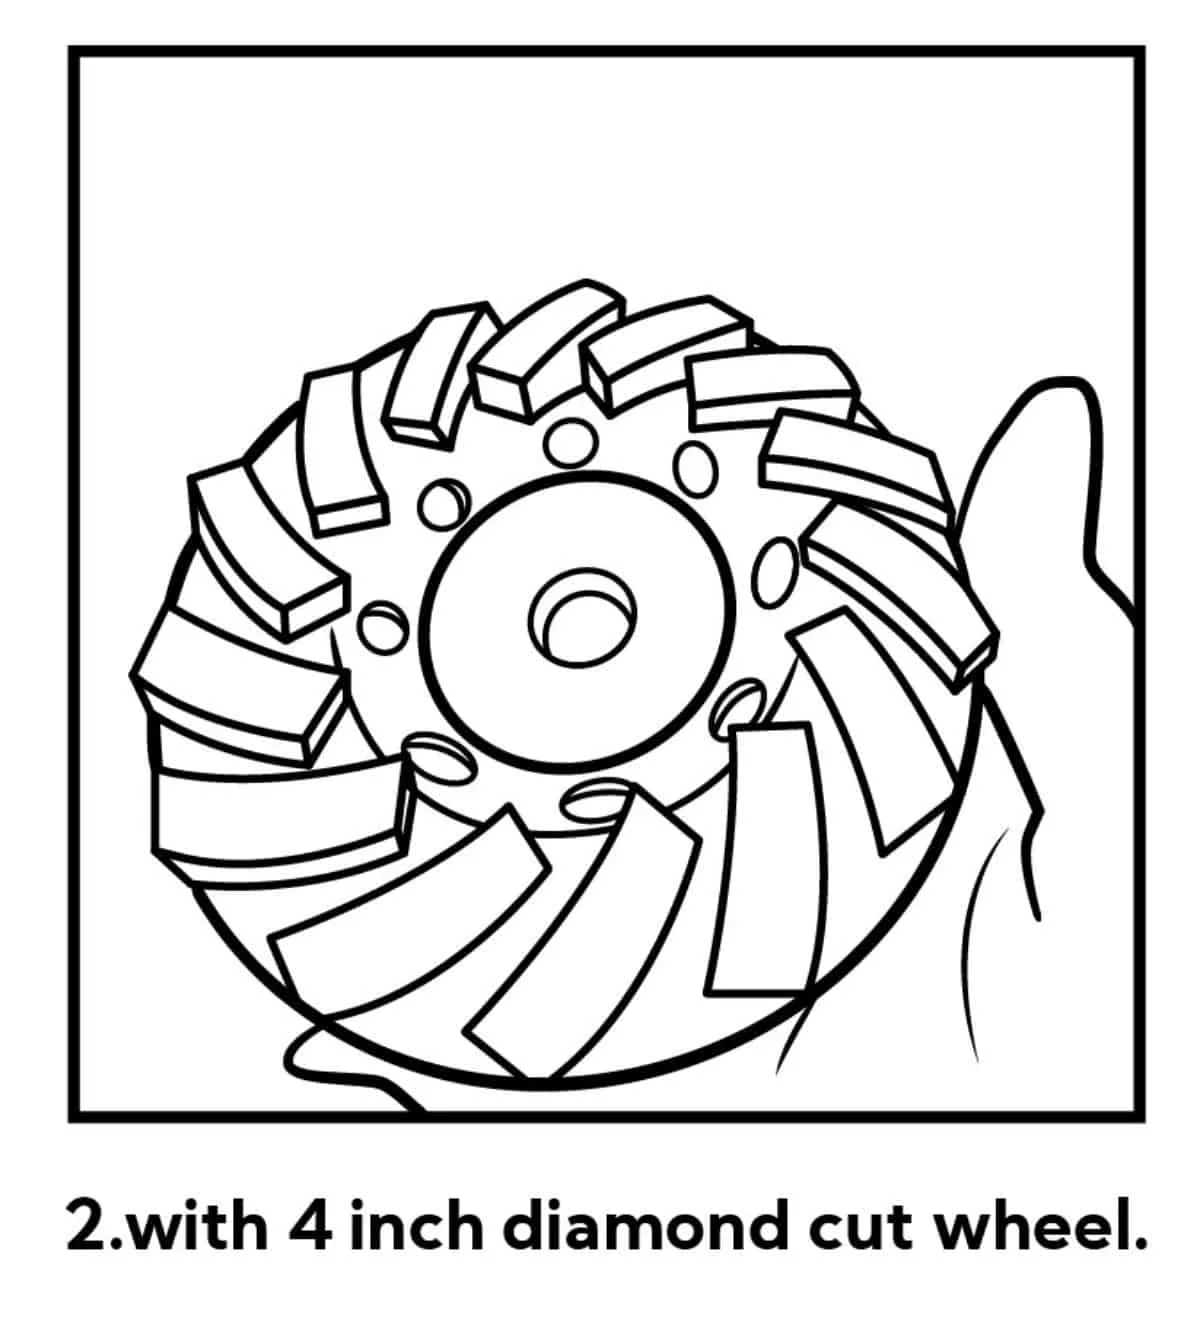 Cómo Quitar la Pintura del Hormigón con la Amoladora - Paso 2. Montar el disco de copa de diamante y los accesorios adecuados